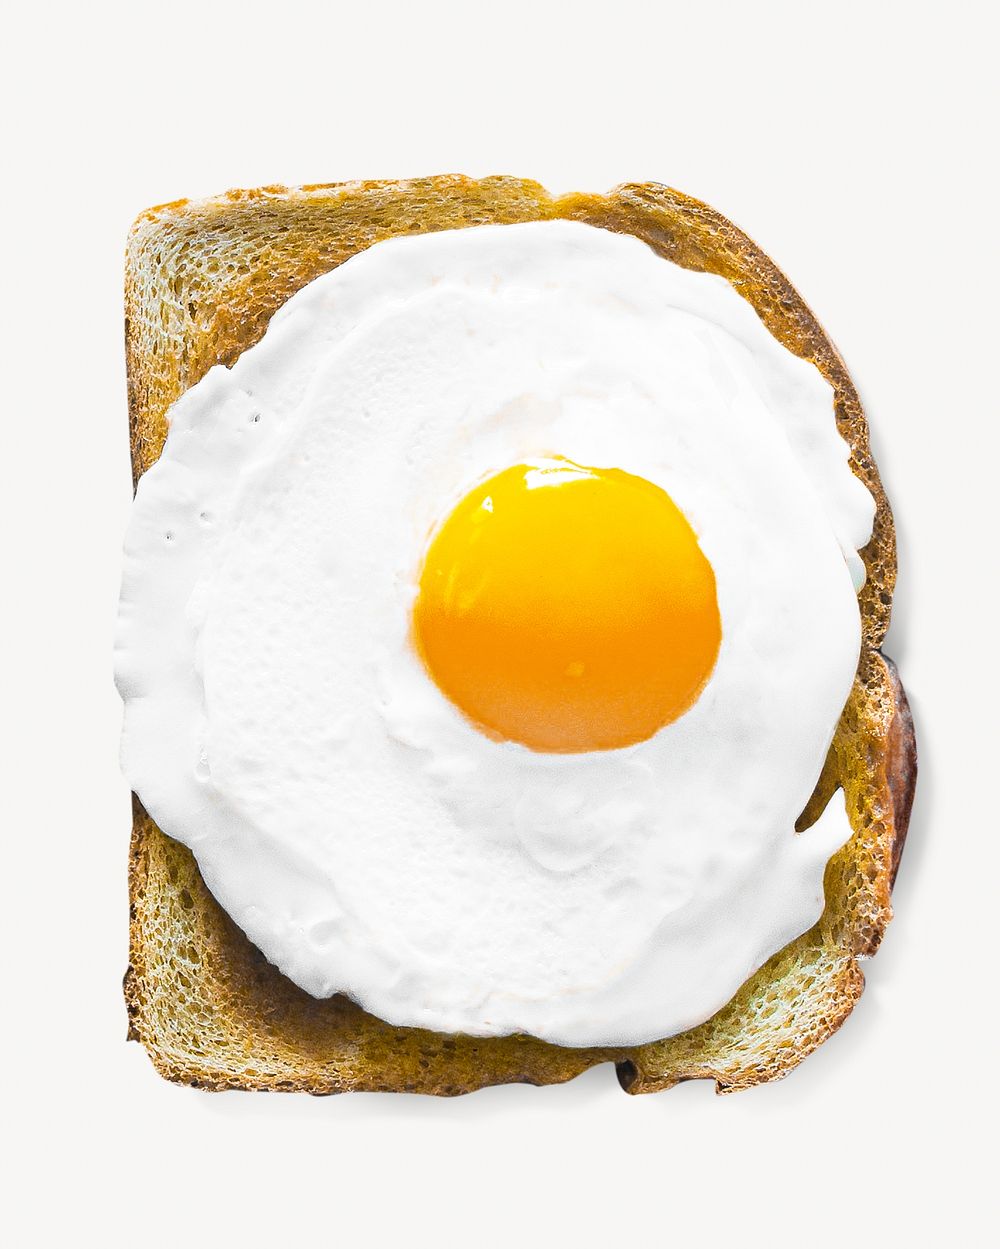 Egg on toast breakfast, isolated image